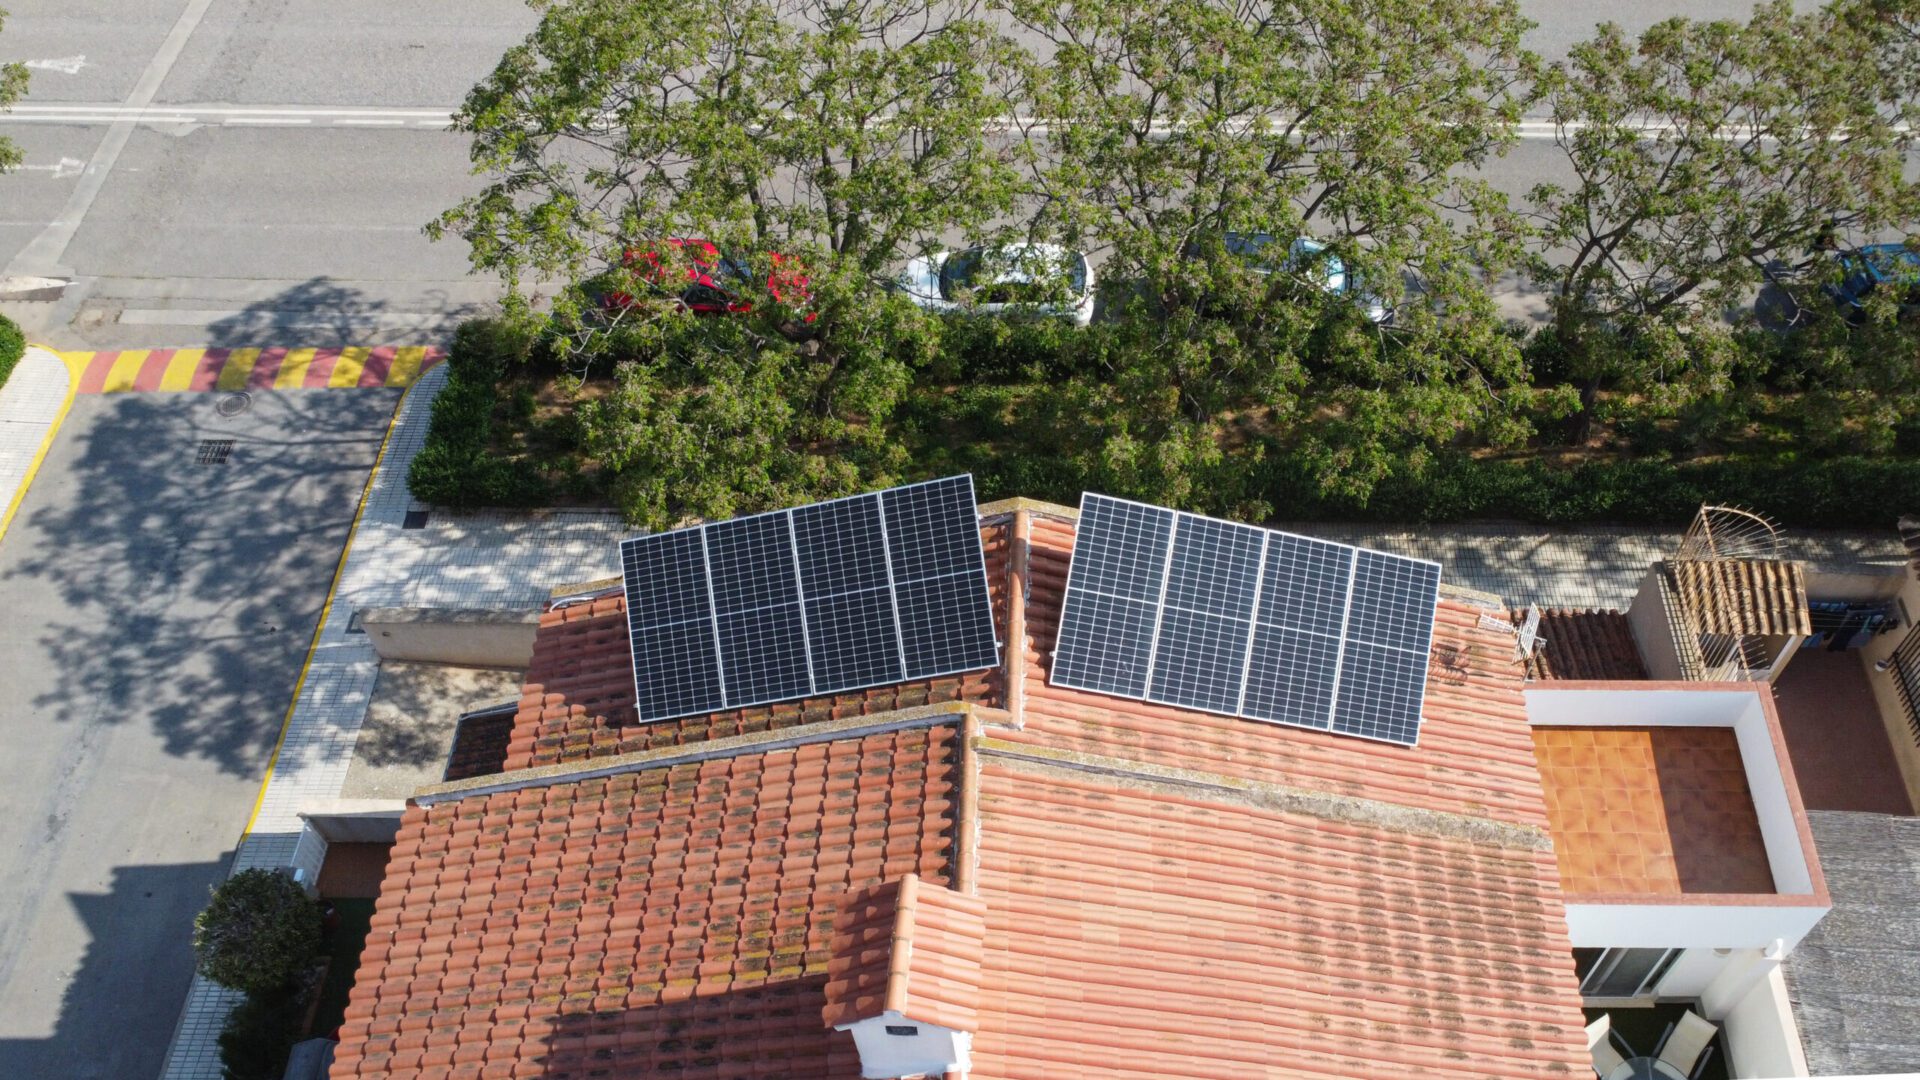 Instalación fotovoltaica de 8 paneles e inversor de 6kW